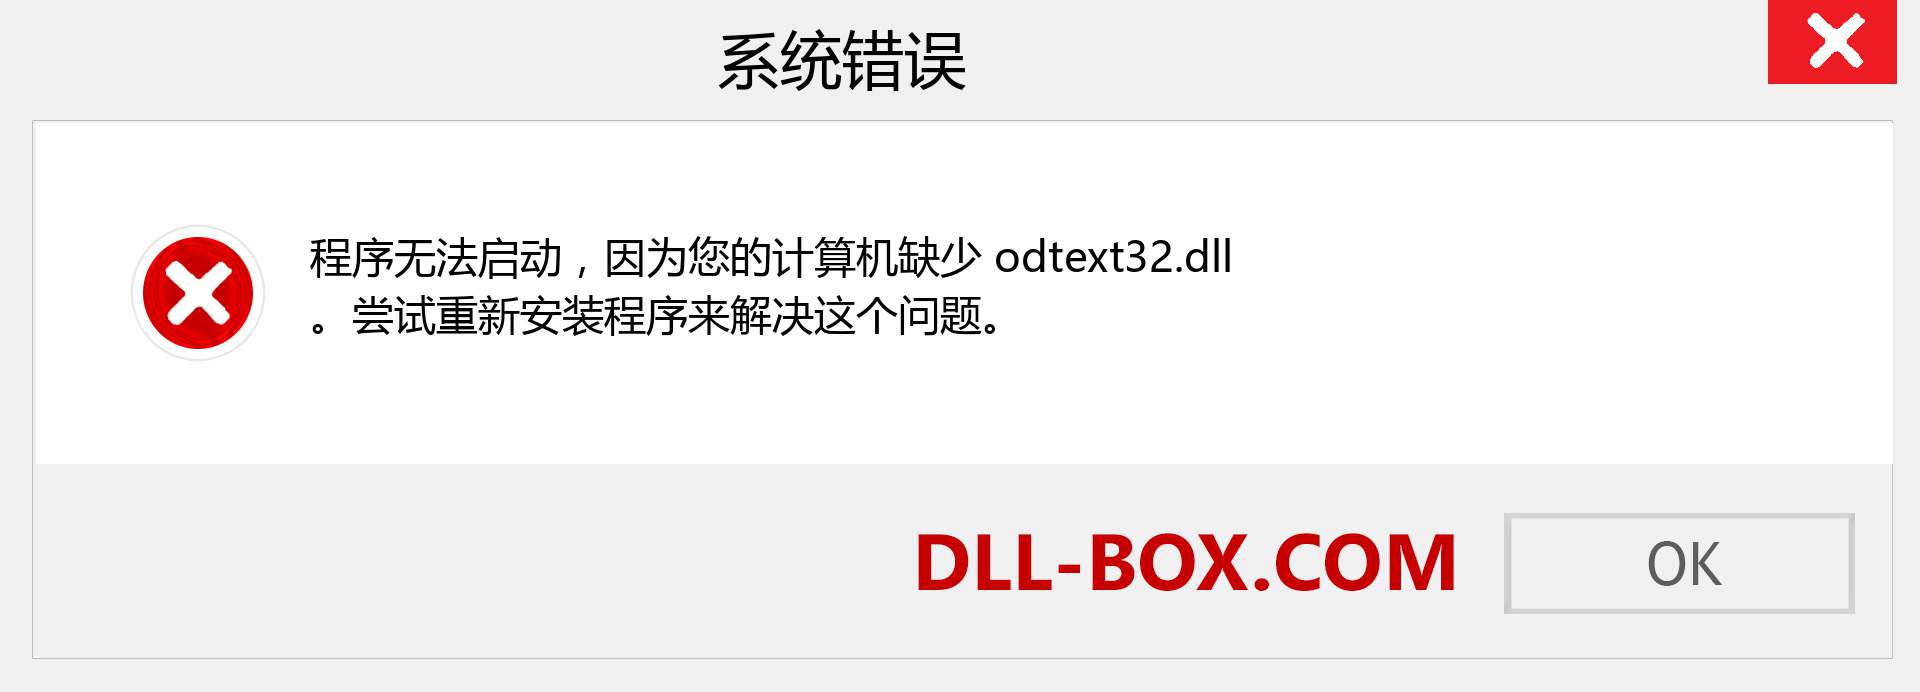 odtext32.dll 文件丢失？。 适用于 Windows 7、8、10 的下载 - 修复 Windows、照片、图像上的 odtext32 dll 丢失错误